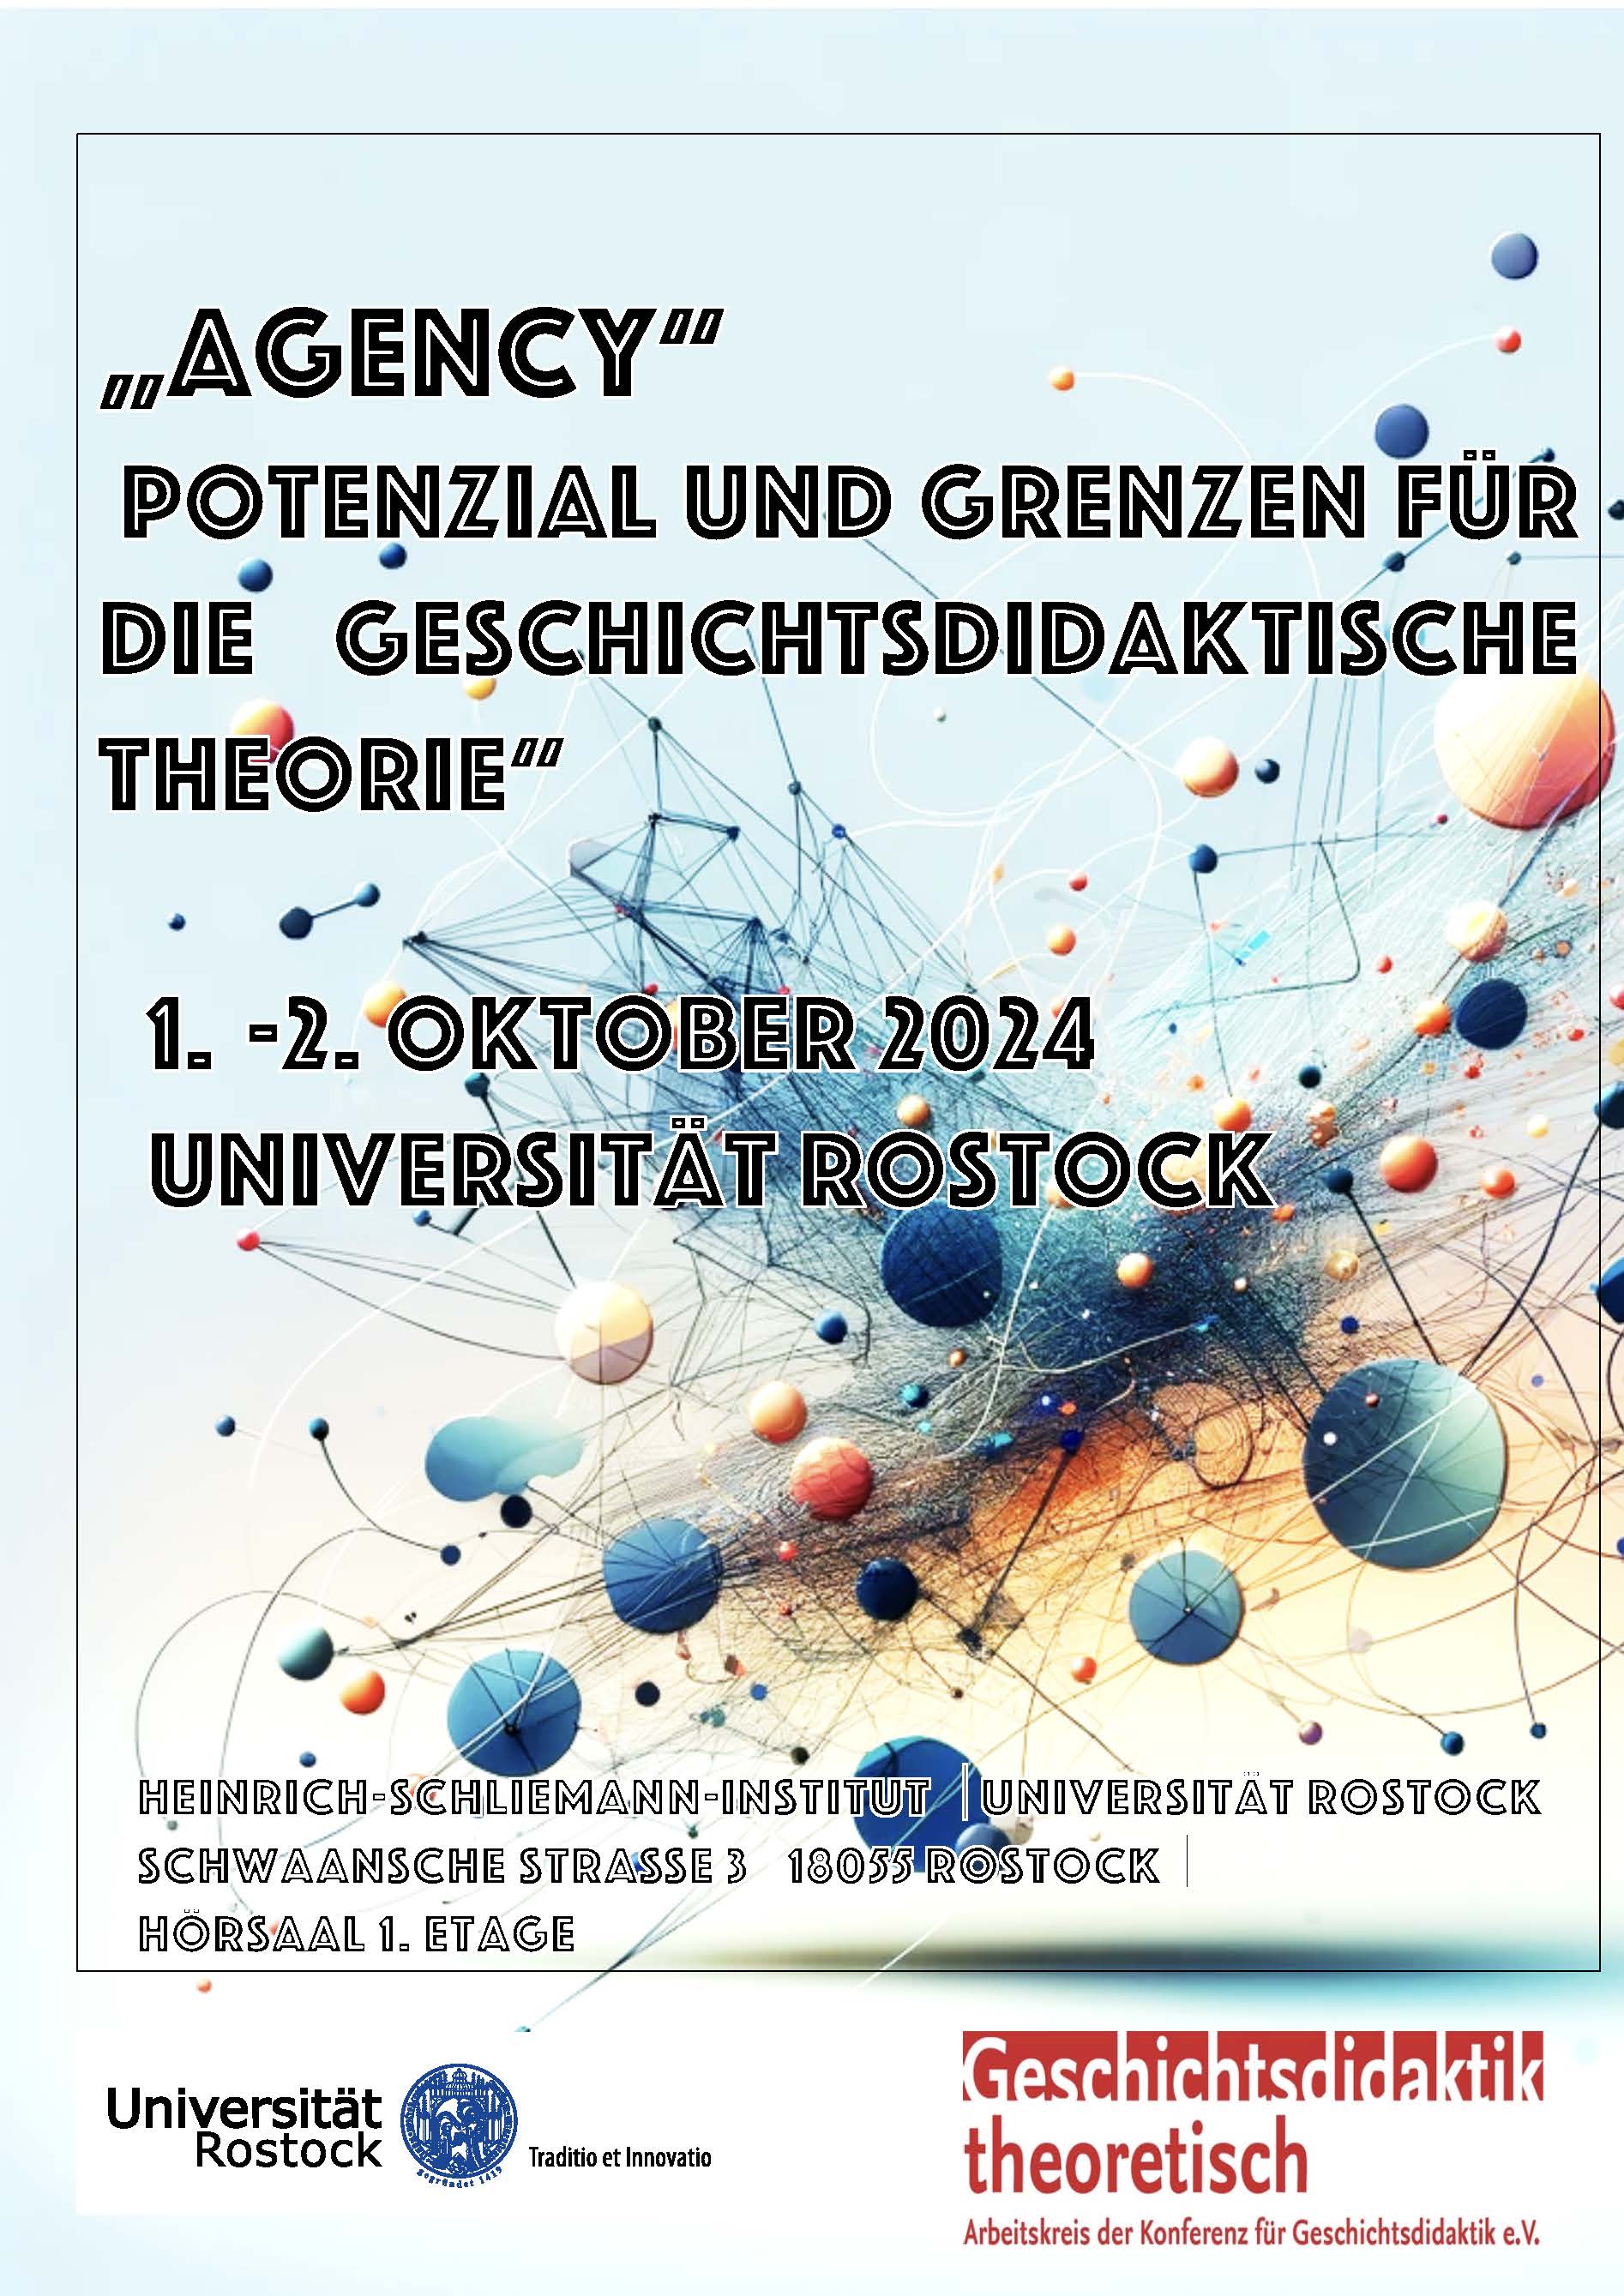 Plakat für die Tagung des Arbeitskreises "Geschichtsdidaktik theoretisch" zum Thema Agency in Rostock